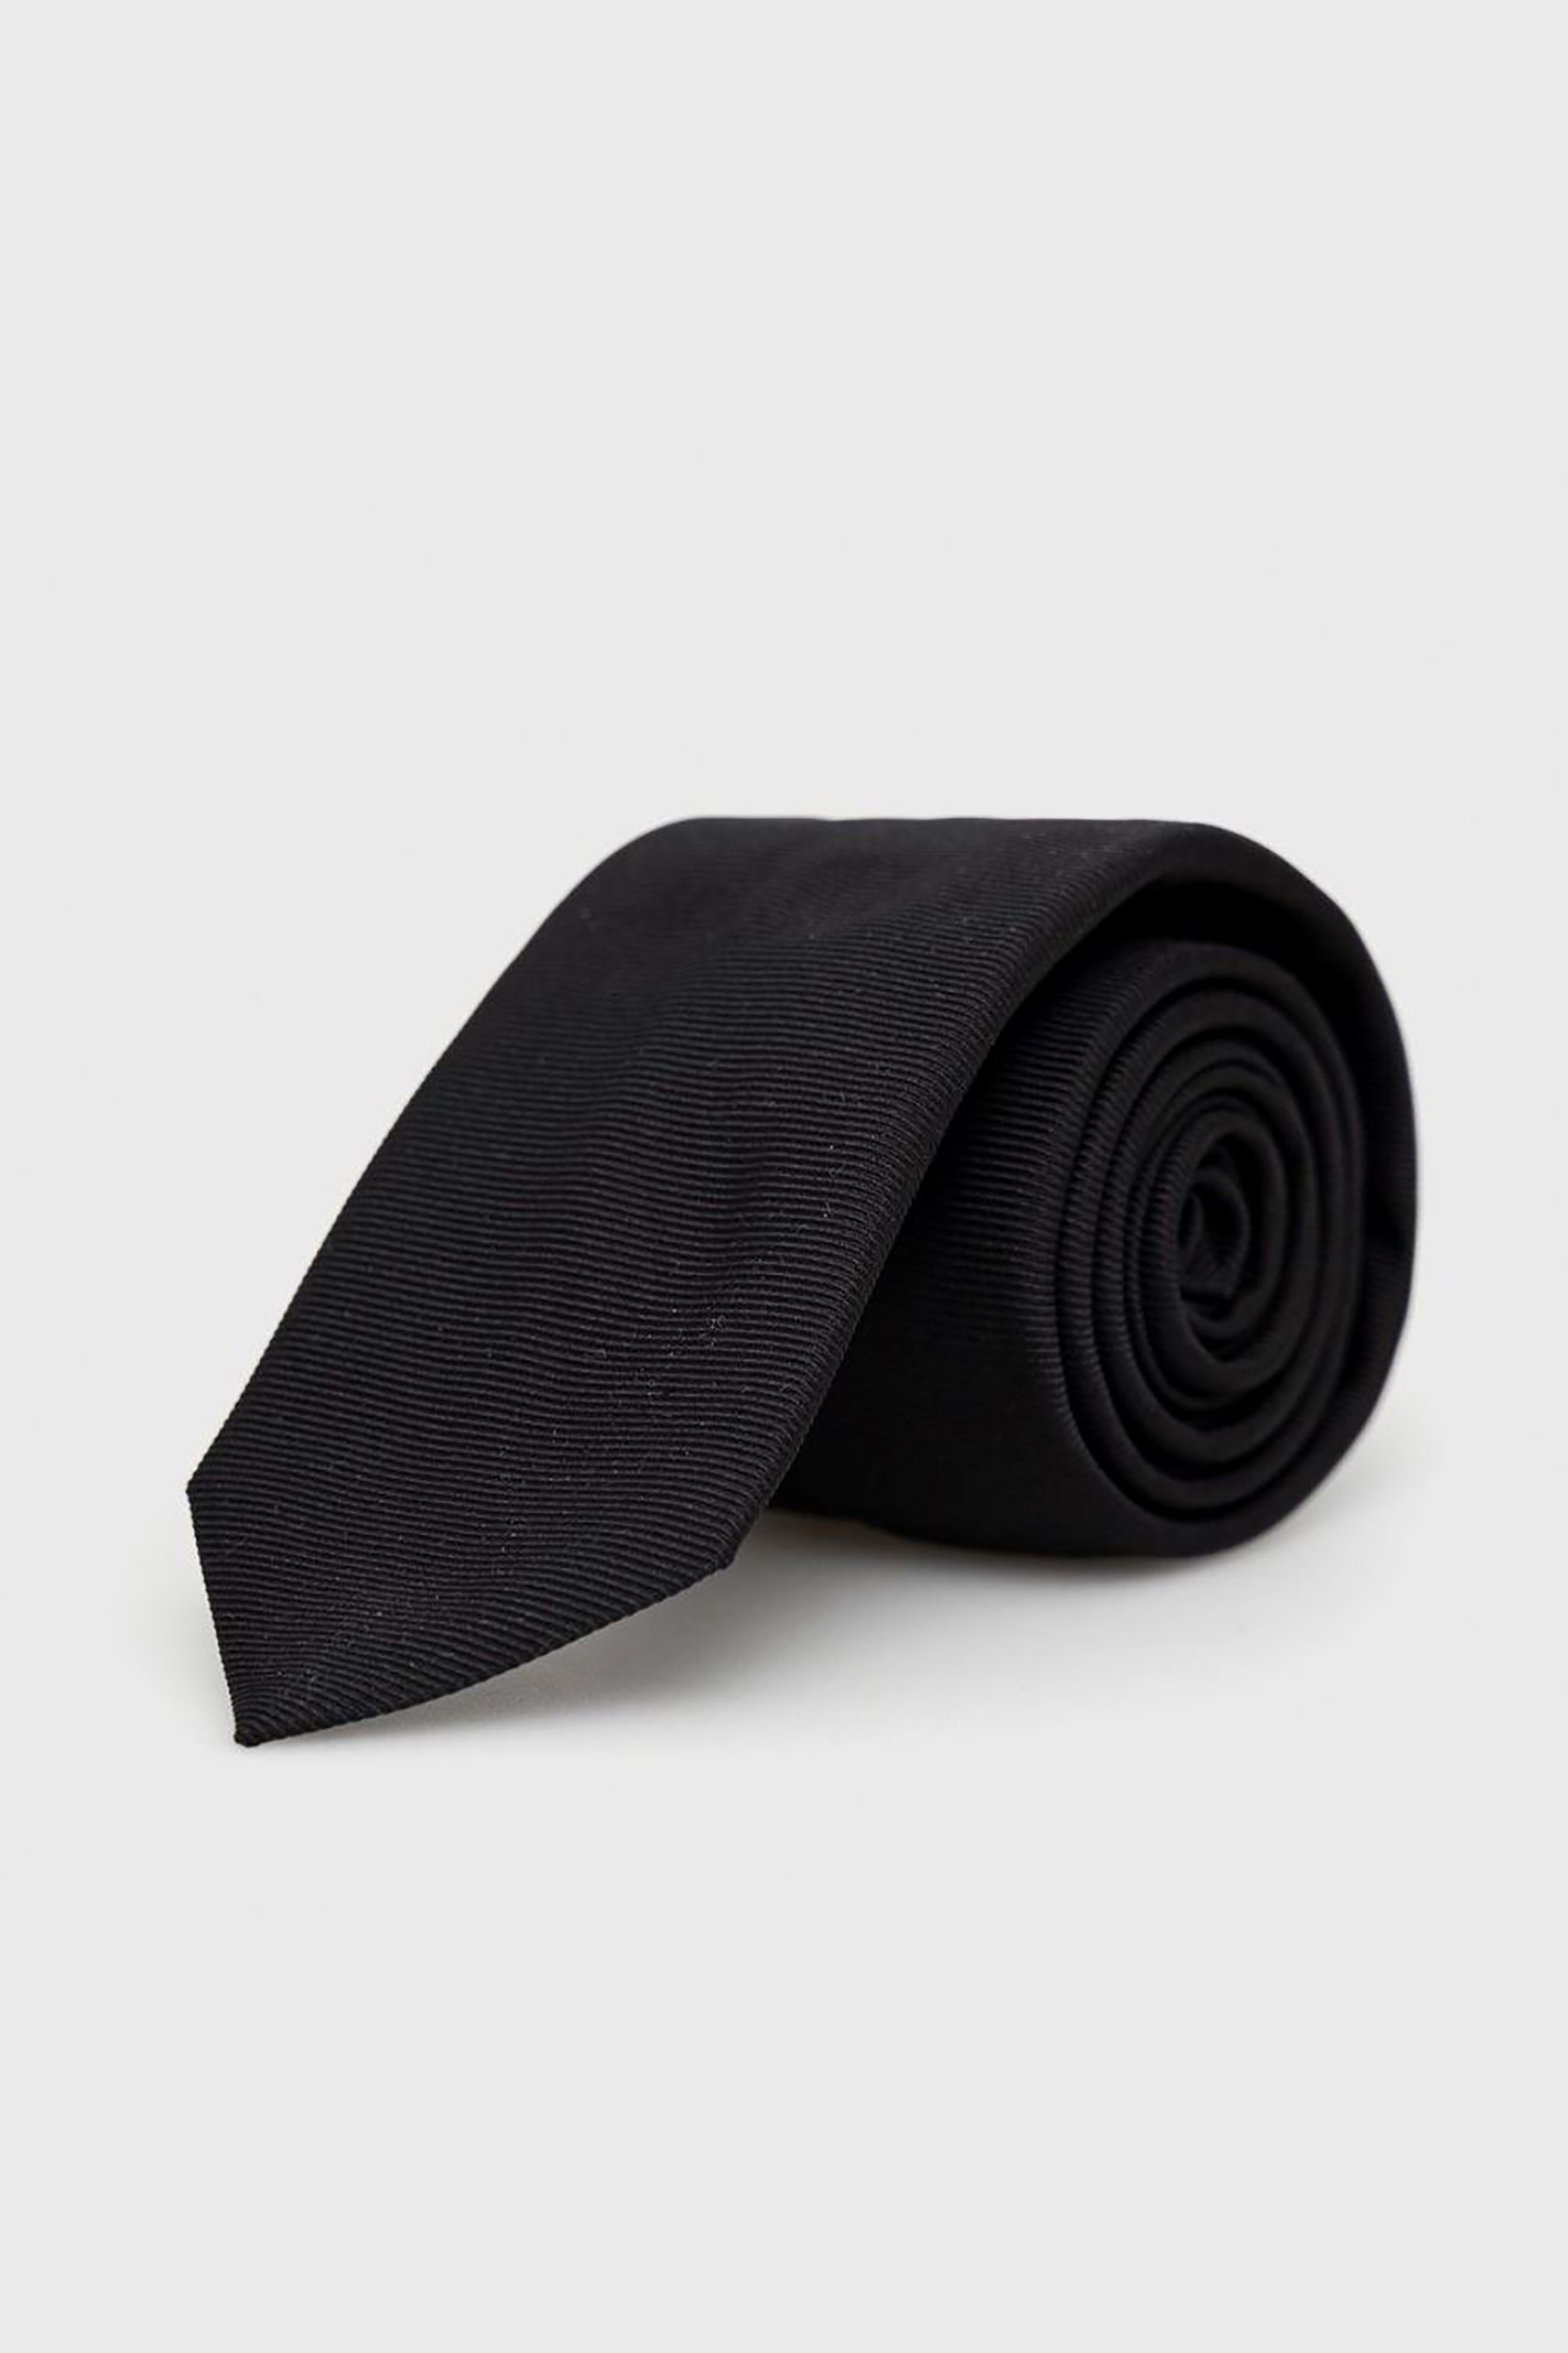 Ανδρική Μόδα > Ανδρικά Αξεσουάρ > Ανδρικές Γραβάτες & Παπιγιόν Hugo Boss ανδρική γραβάτα με μικροσχέδια - 50468199 Μαύρο